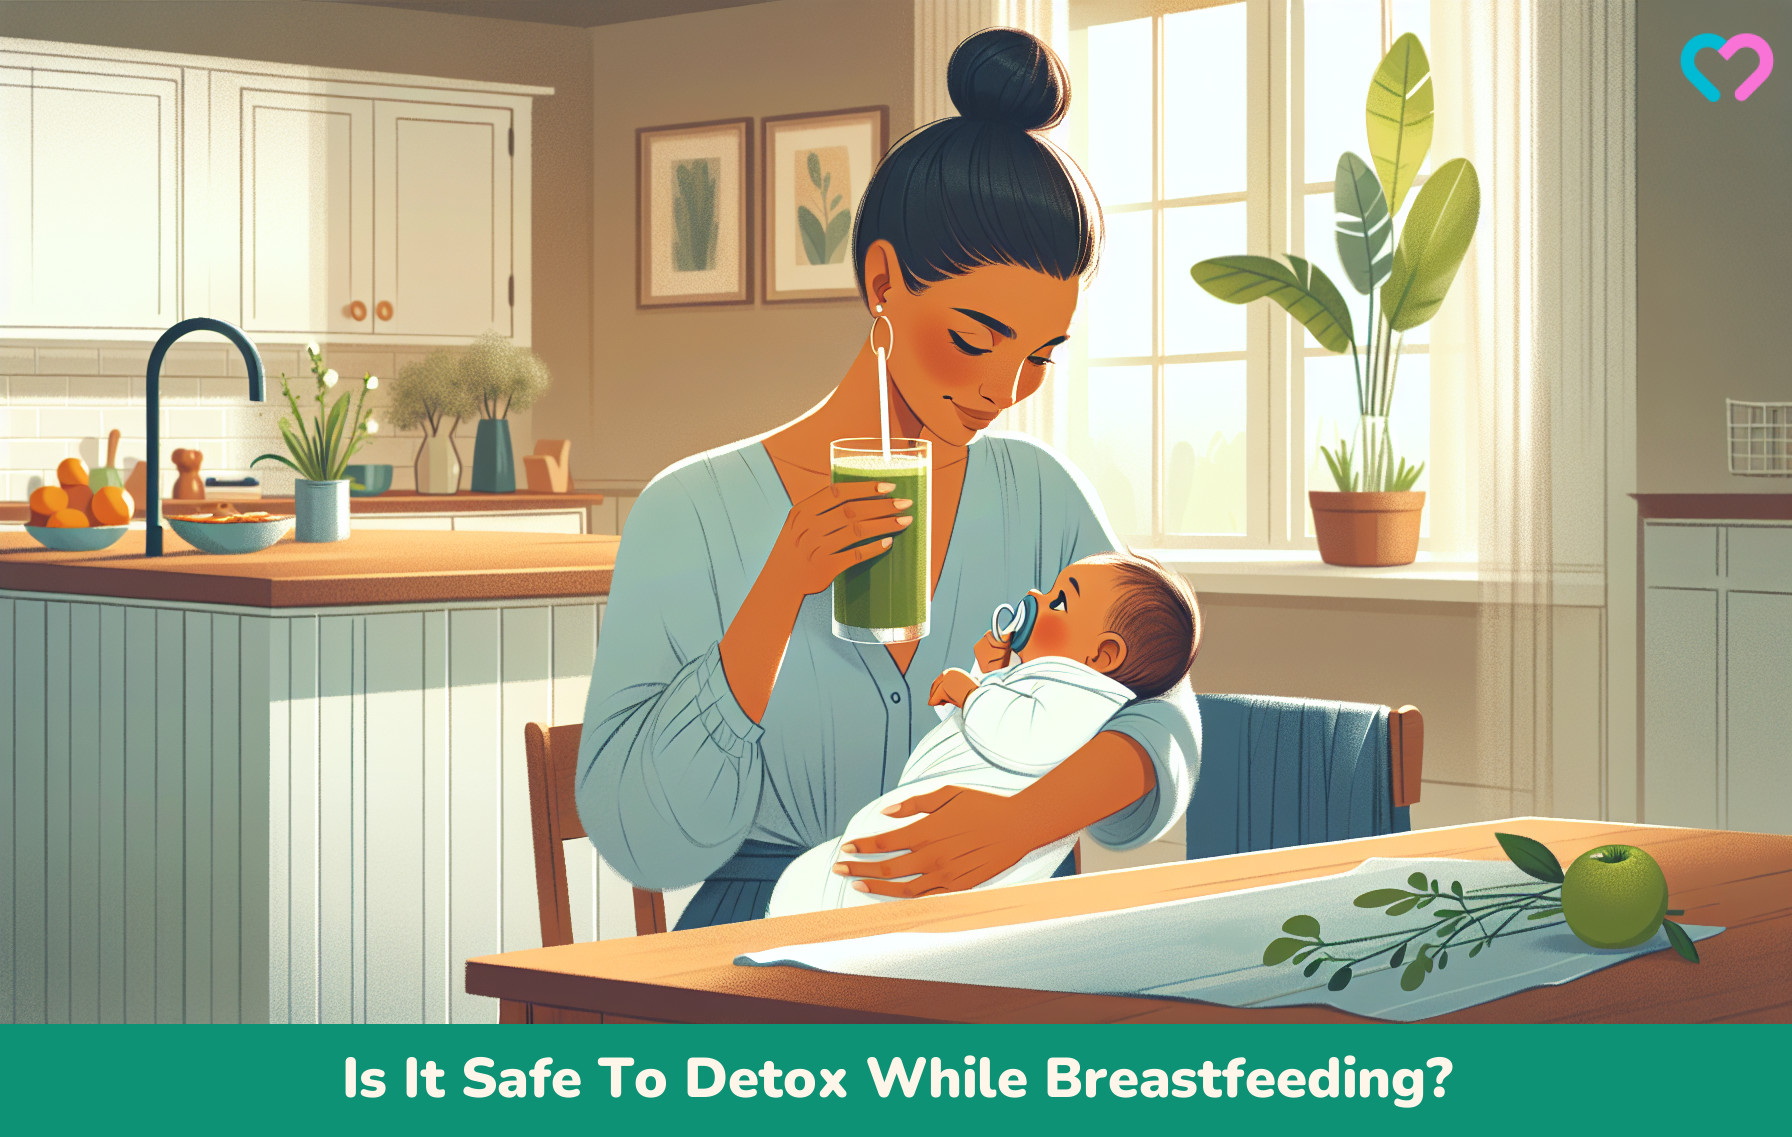 Detox While Breastfeeding_illustration